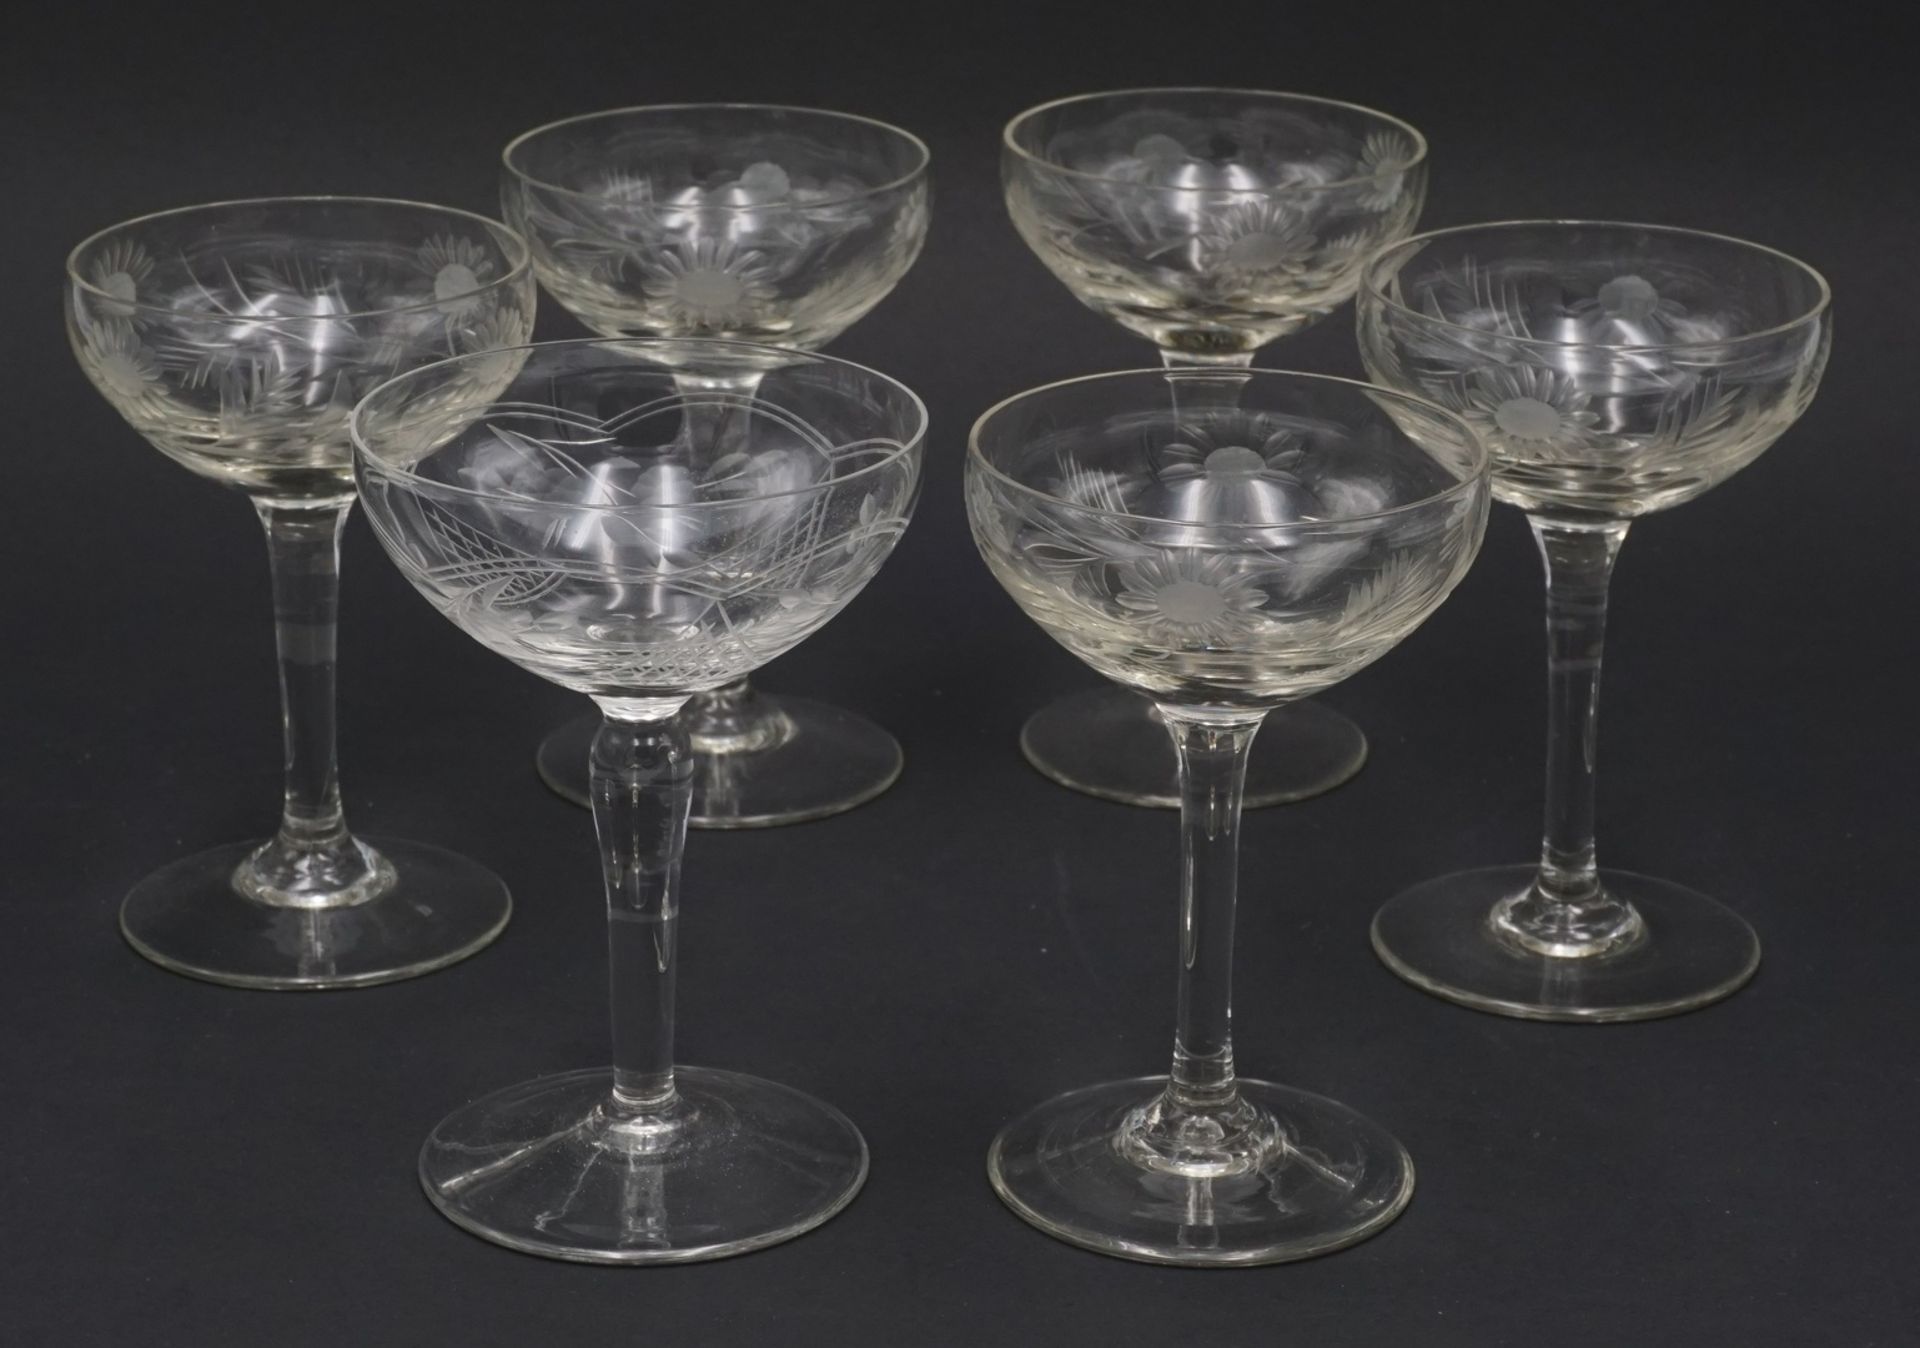 24 Likörschalen und Schnapsgläserca. 1900-1930, Glas, 10 Likörschalen und 14 Schnapsgläser, - Bild 3 aus 3